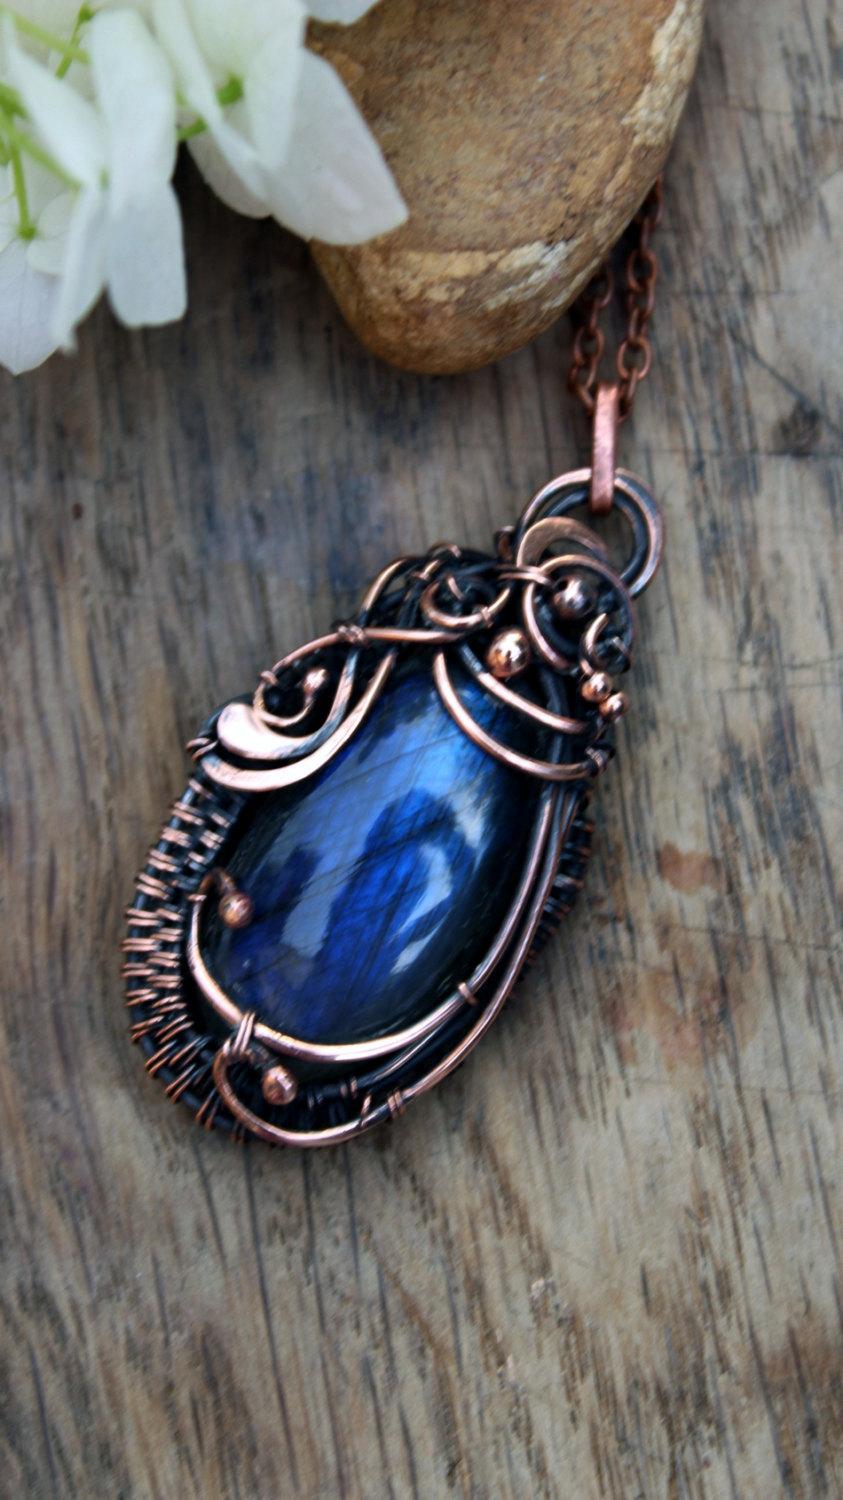 زفاف - Labradorite Pendant Wire wrapped pendant Copper pendant necklace Inspirational necklace Wife gift for her Wire necklace stone pendant